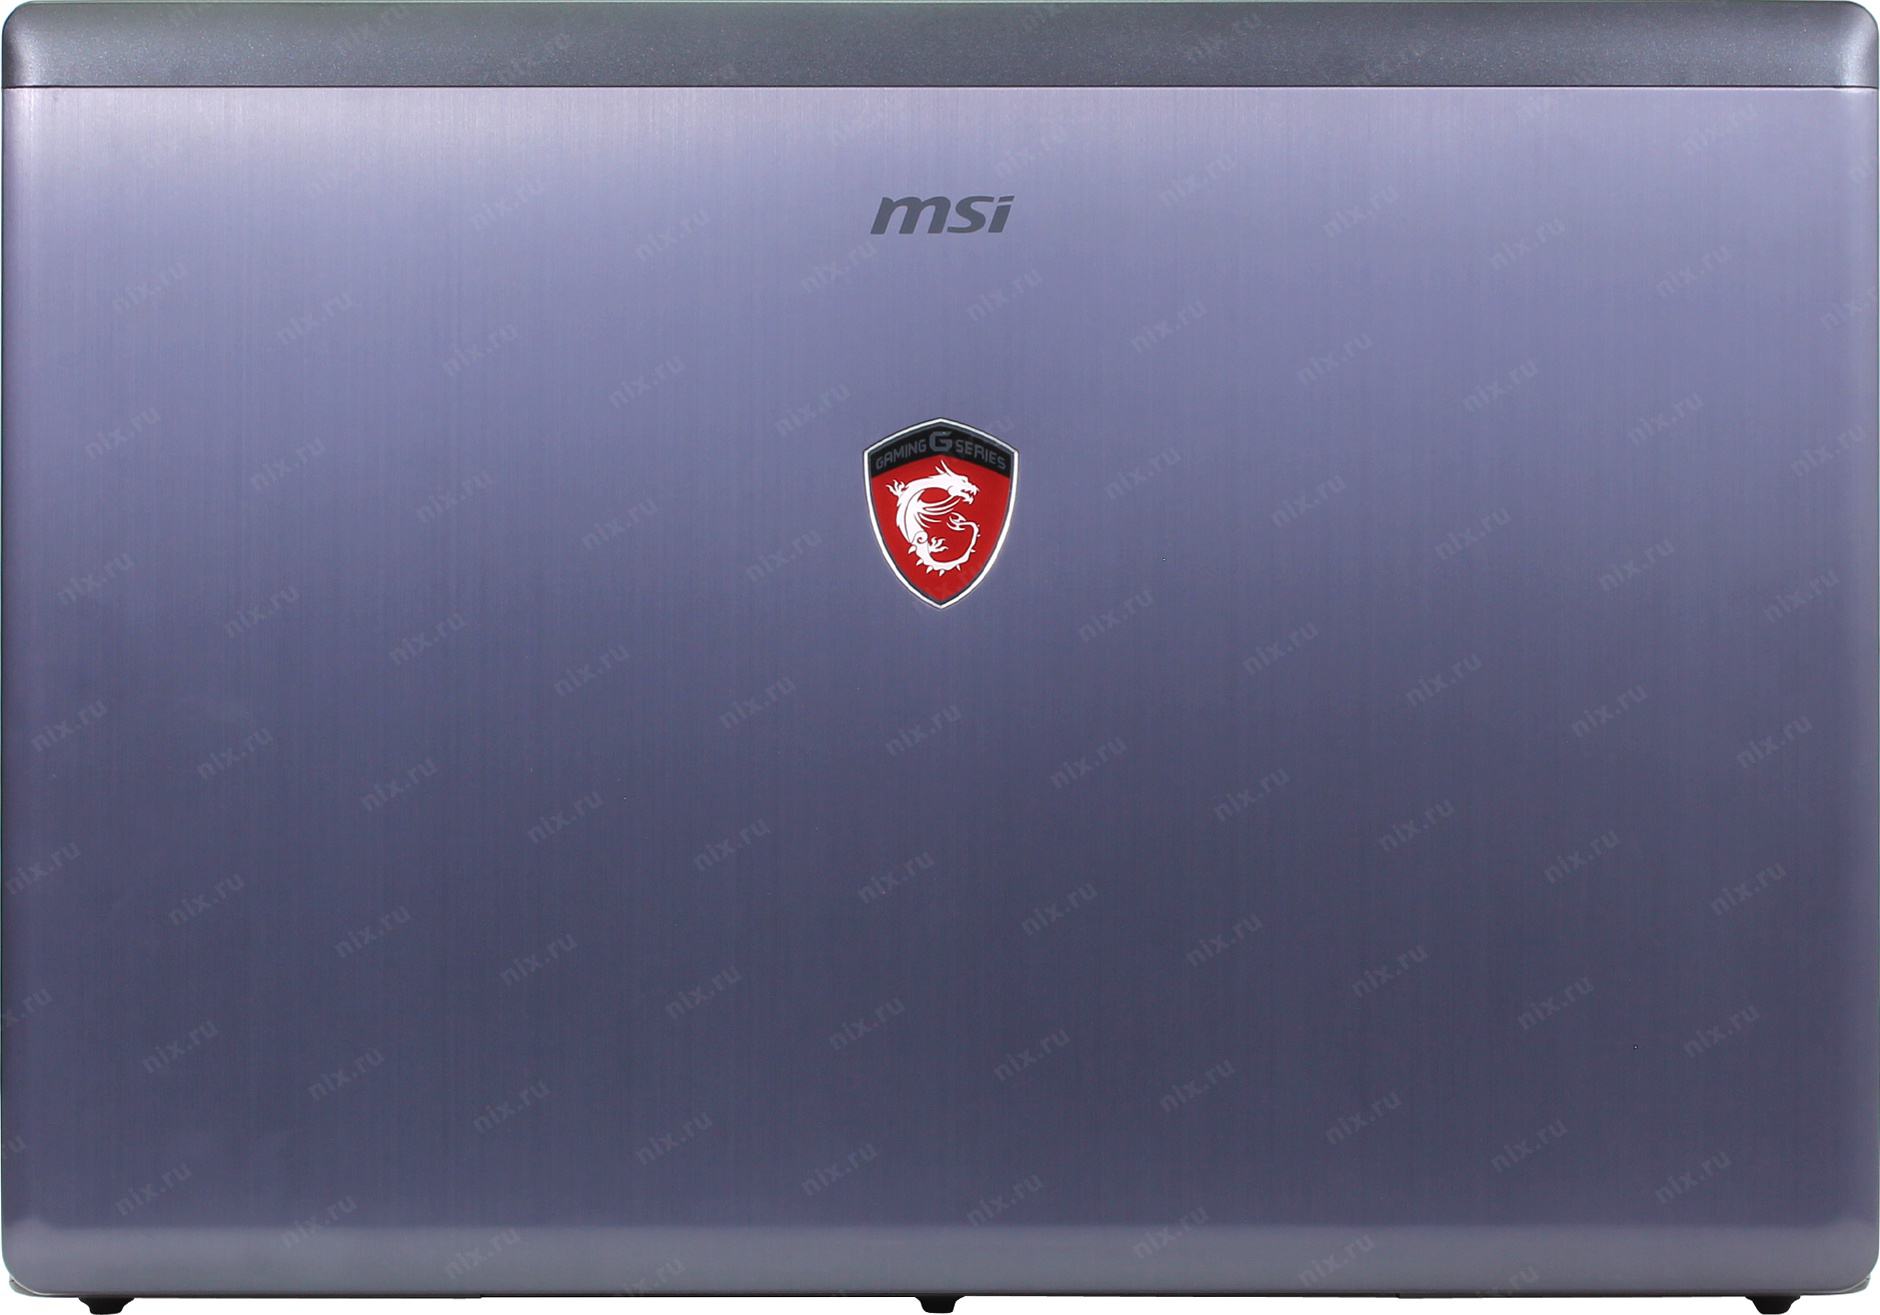 Купить Ноутбук Msi Gs70 В Москве